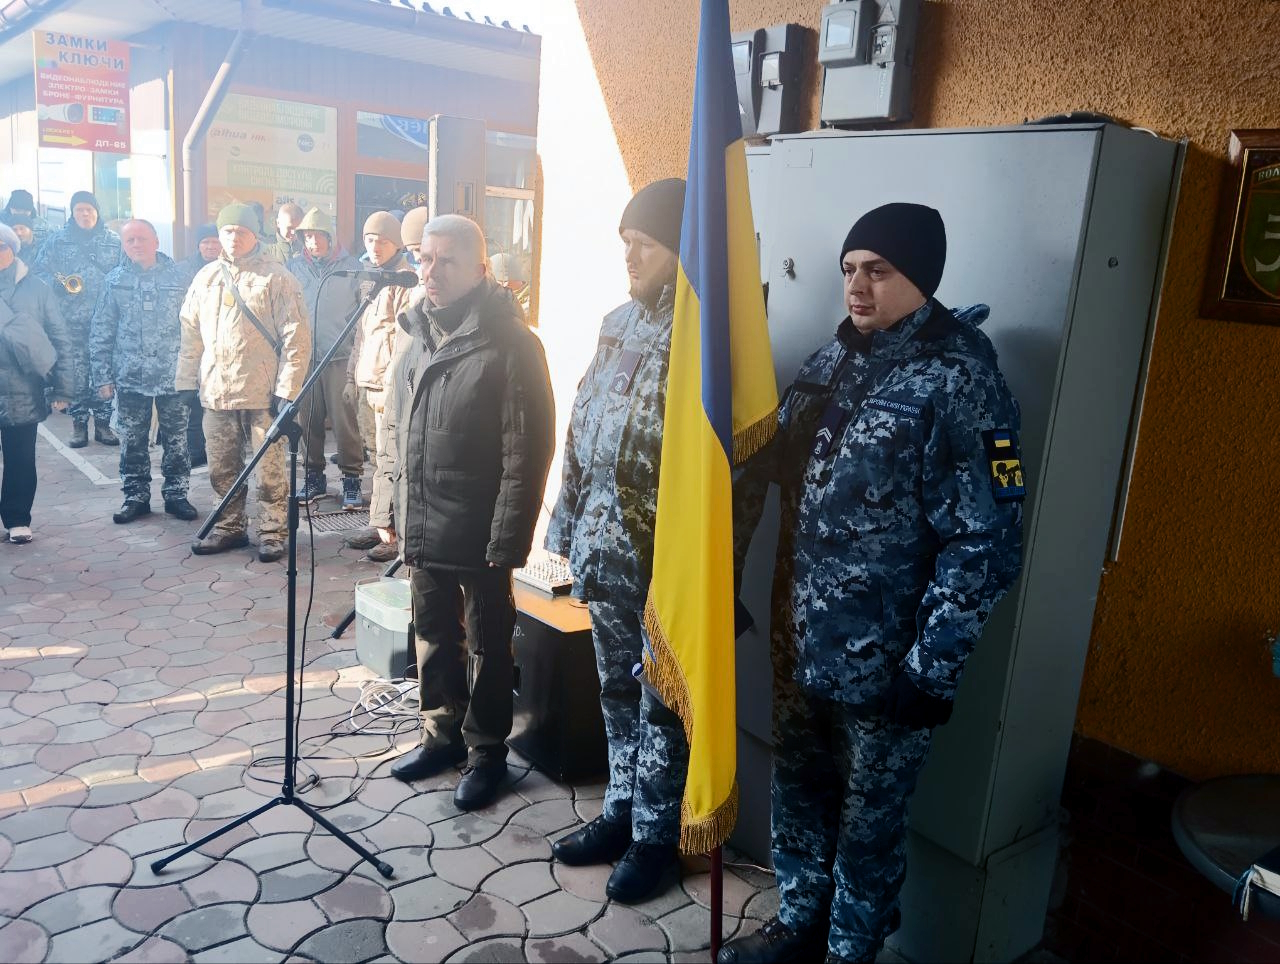 Загиблому командиру з Кіліїської громади відкрили пам'ятну дошку в Одесі "на його місці", під нею встановили лавку